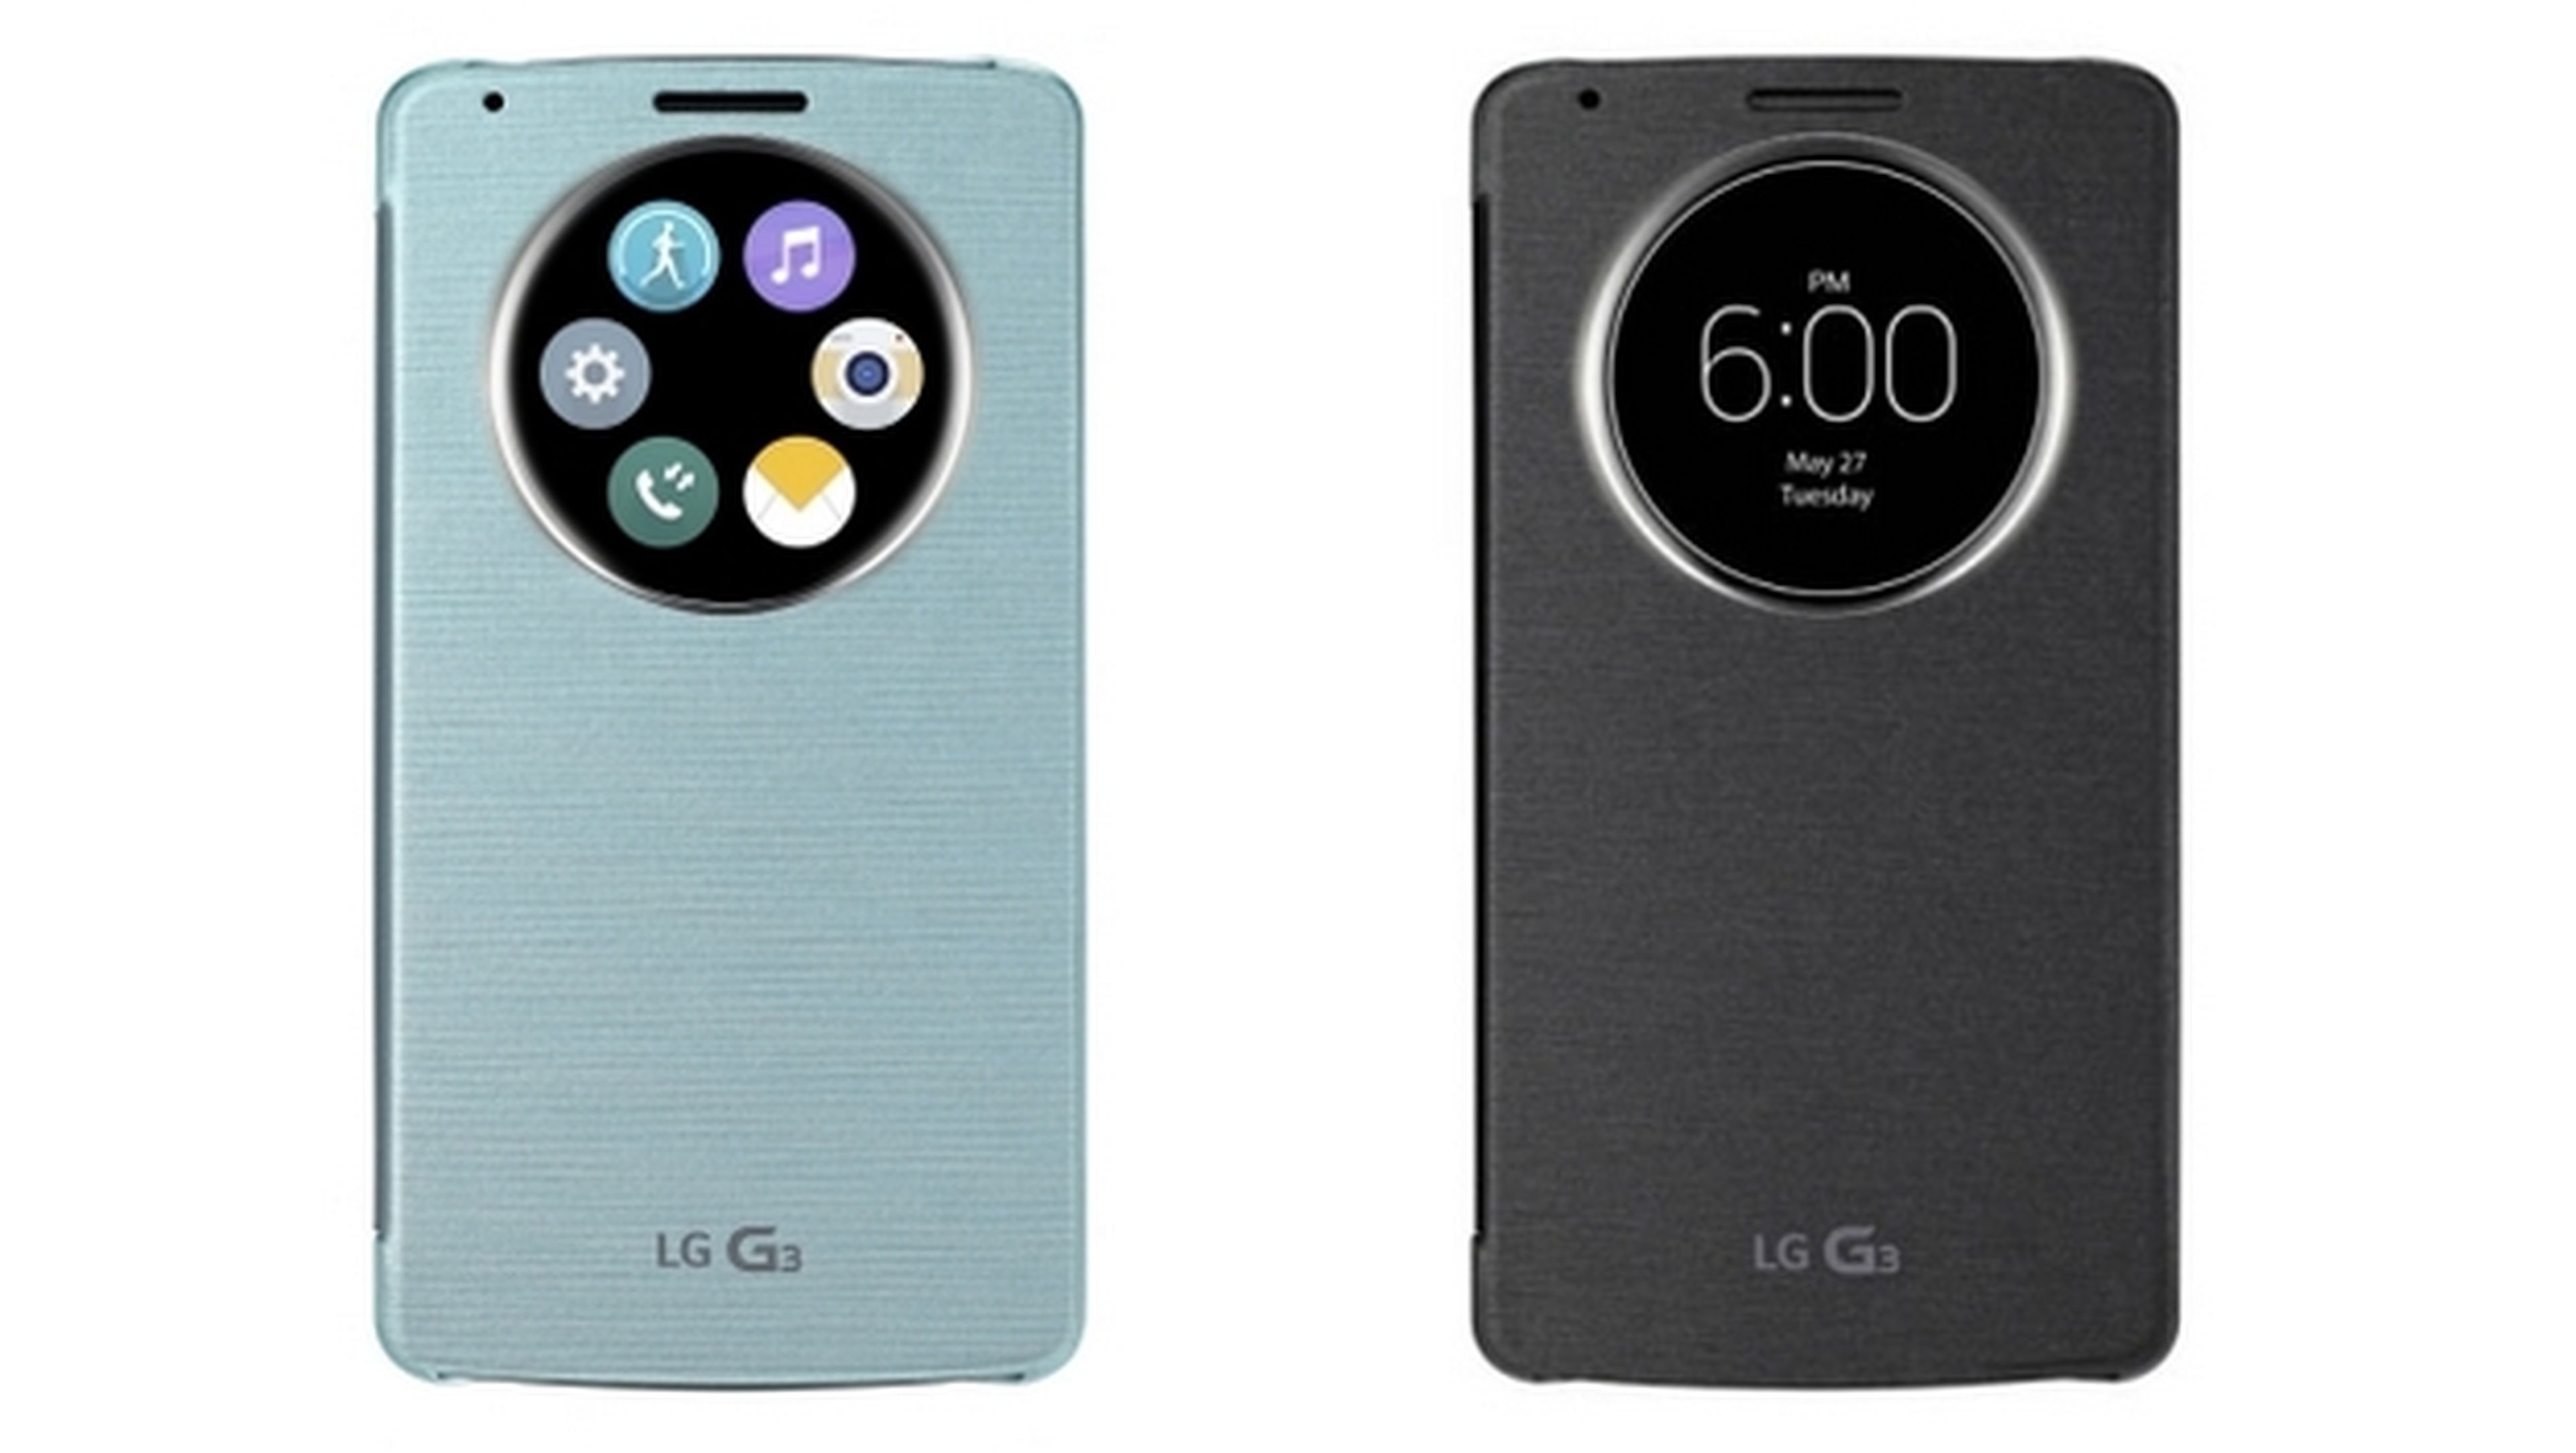 Fundas LG G3 QuickCase presentadas oficialmente por LG, antes del lanzamiento del smartphone.